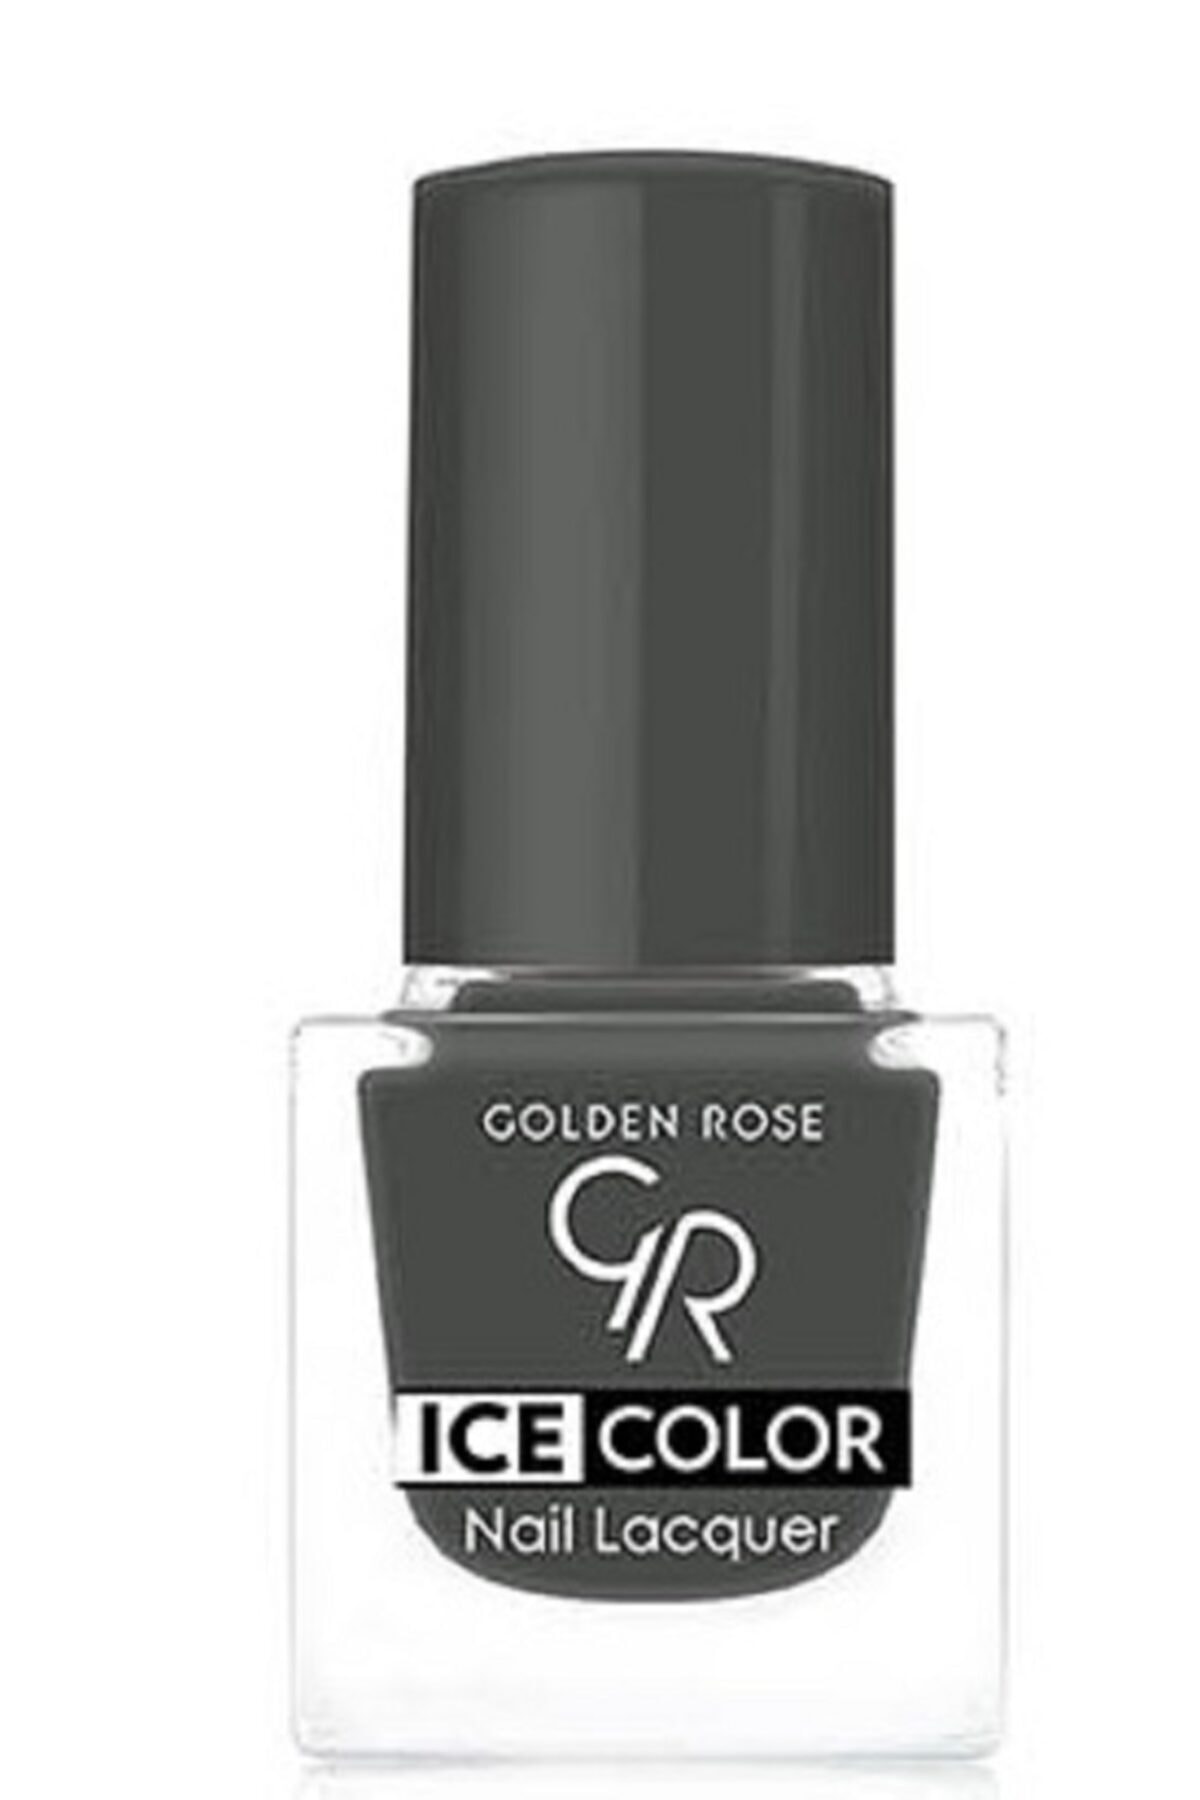 لاک ناخن یخی آیس چیک ICE شماره 168 رنگ برنز گلدن رز Golden Rose